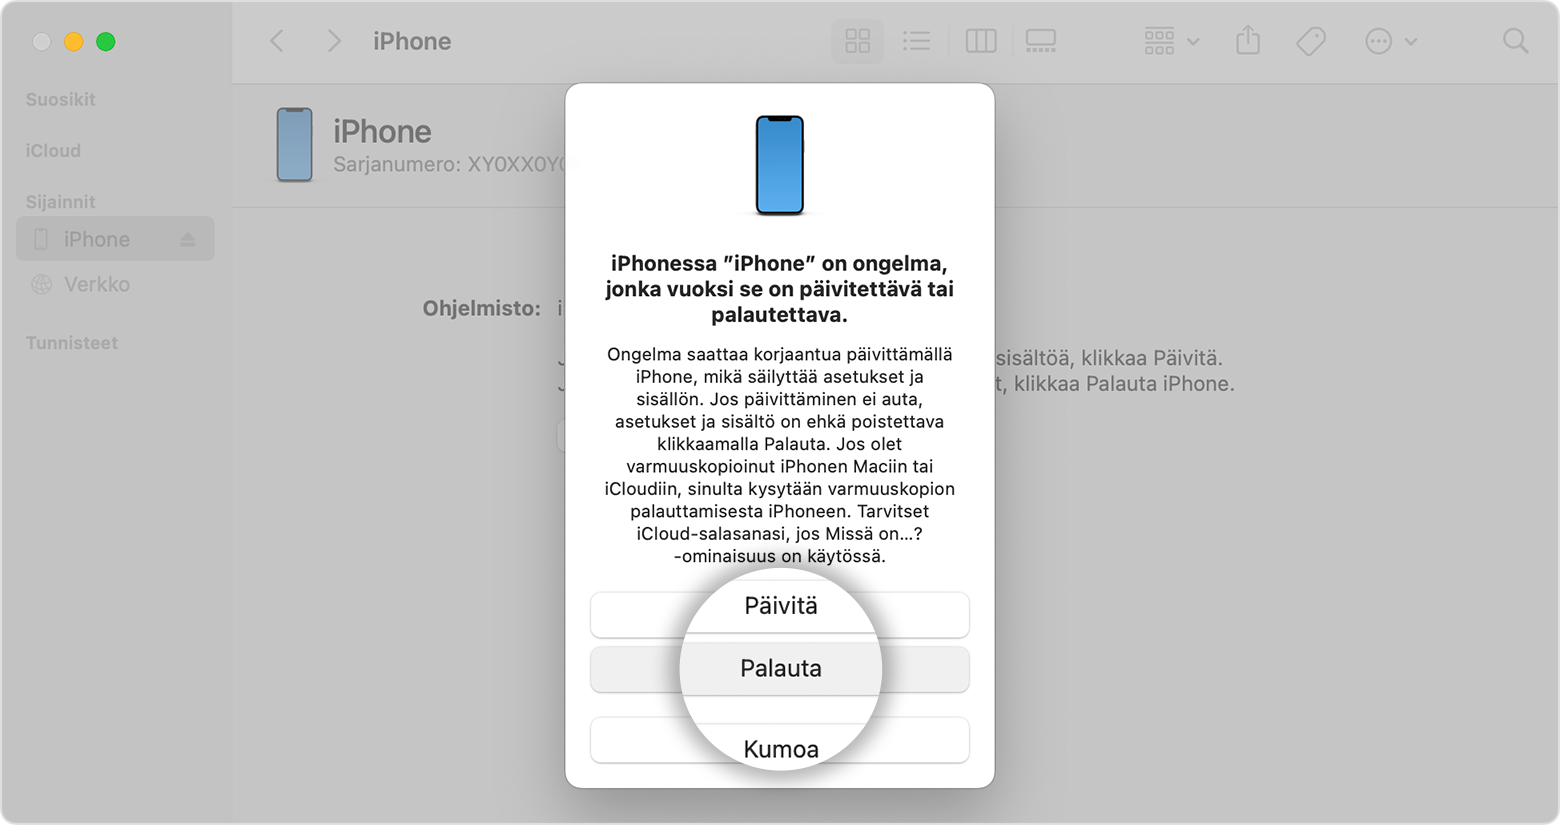 Voit palauttaa iPhonen Finderin kautta, kun olet yhdistänyt iPhonen tietokoneeseen.